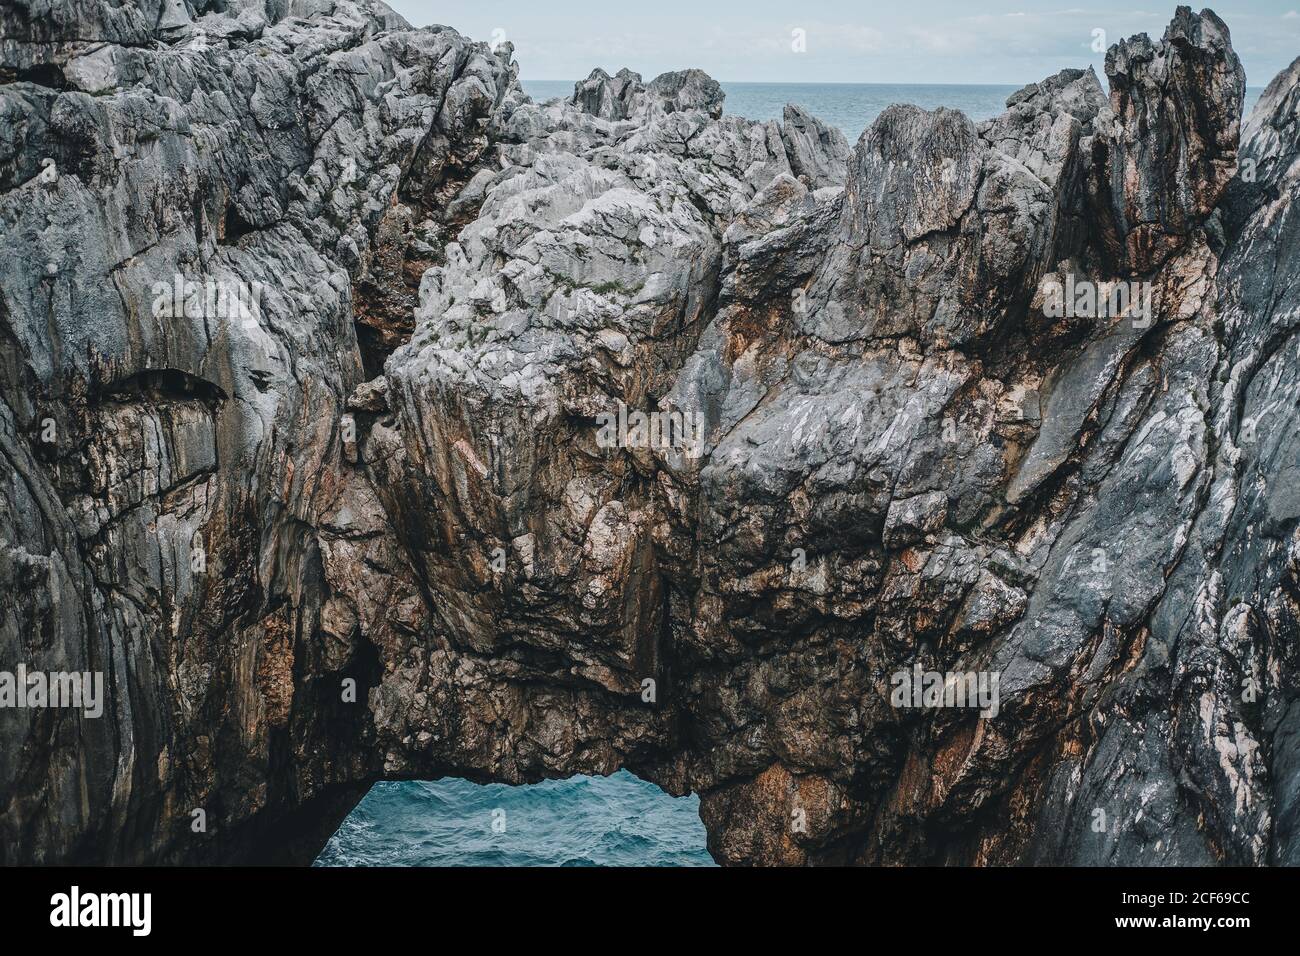 Vista mozzafiato delle scogliere rocciose con arco naturale e bella laguna in giorno nuvoloso Foto Stock